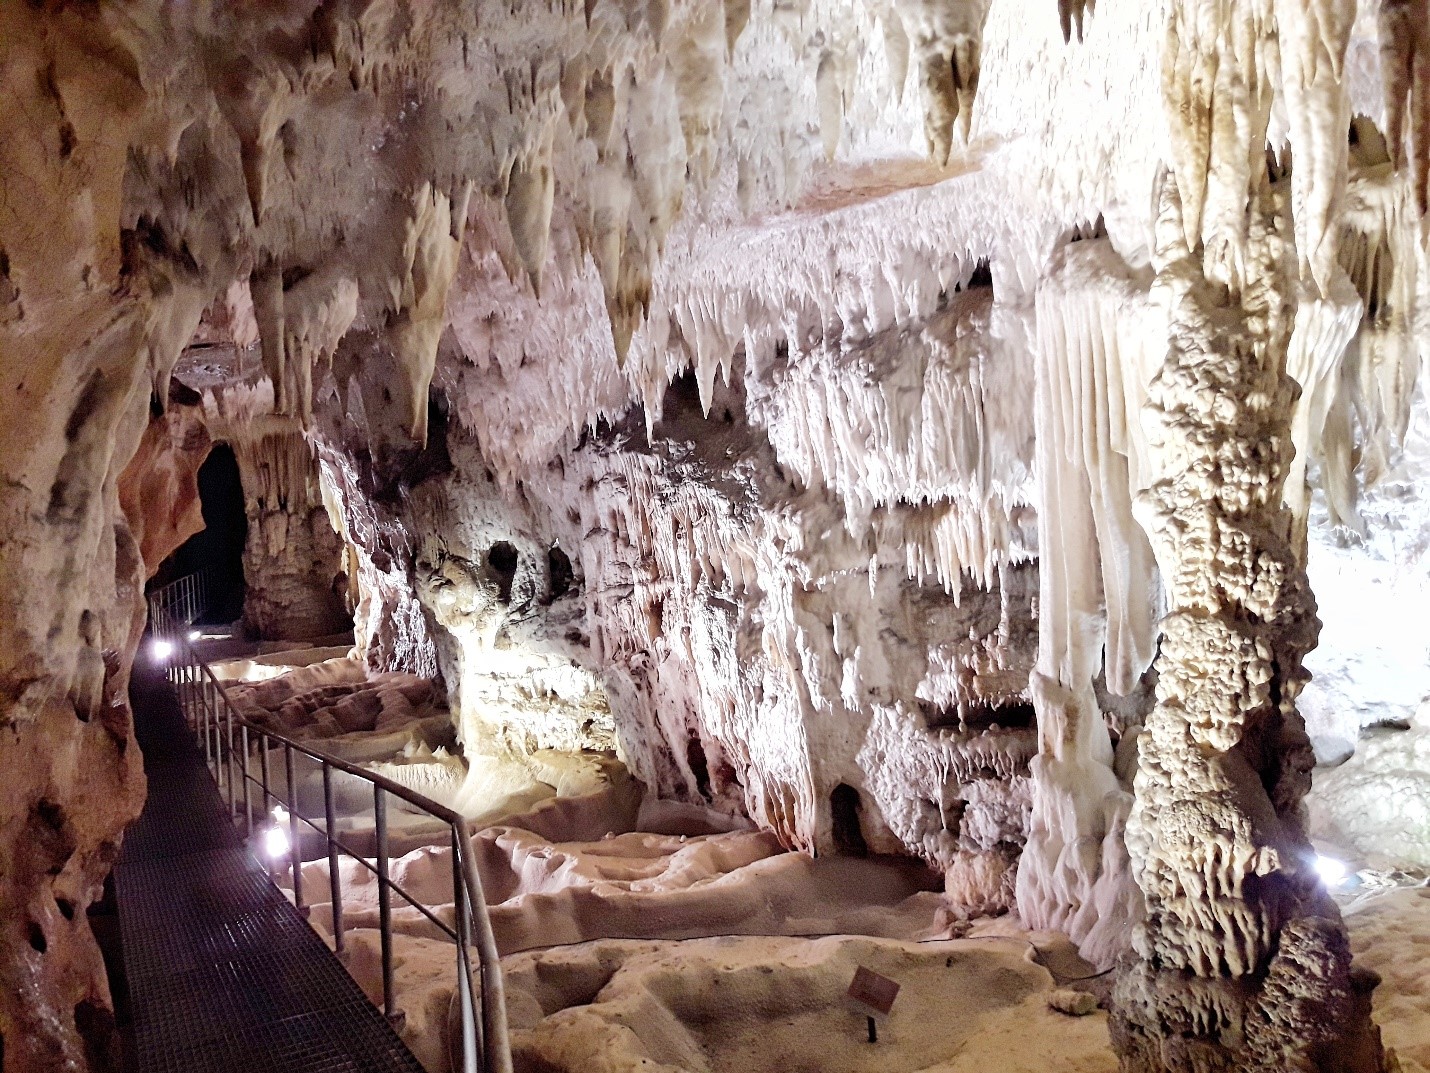 Rajko's cave